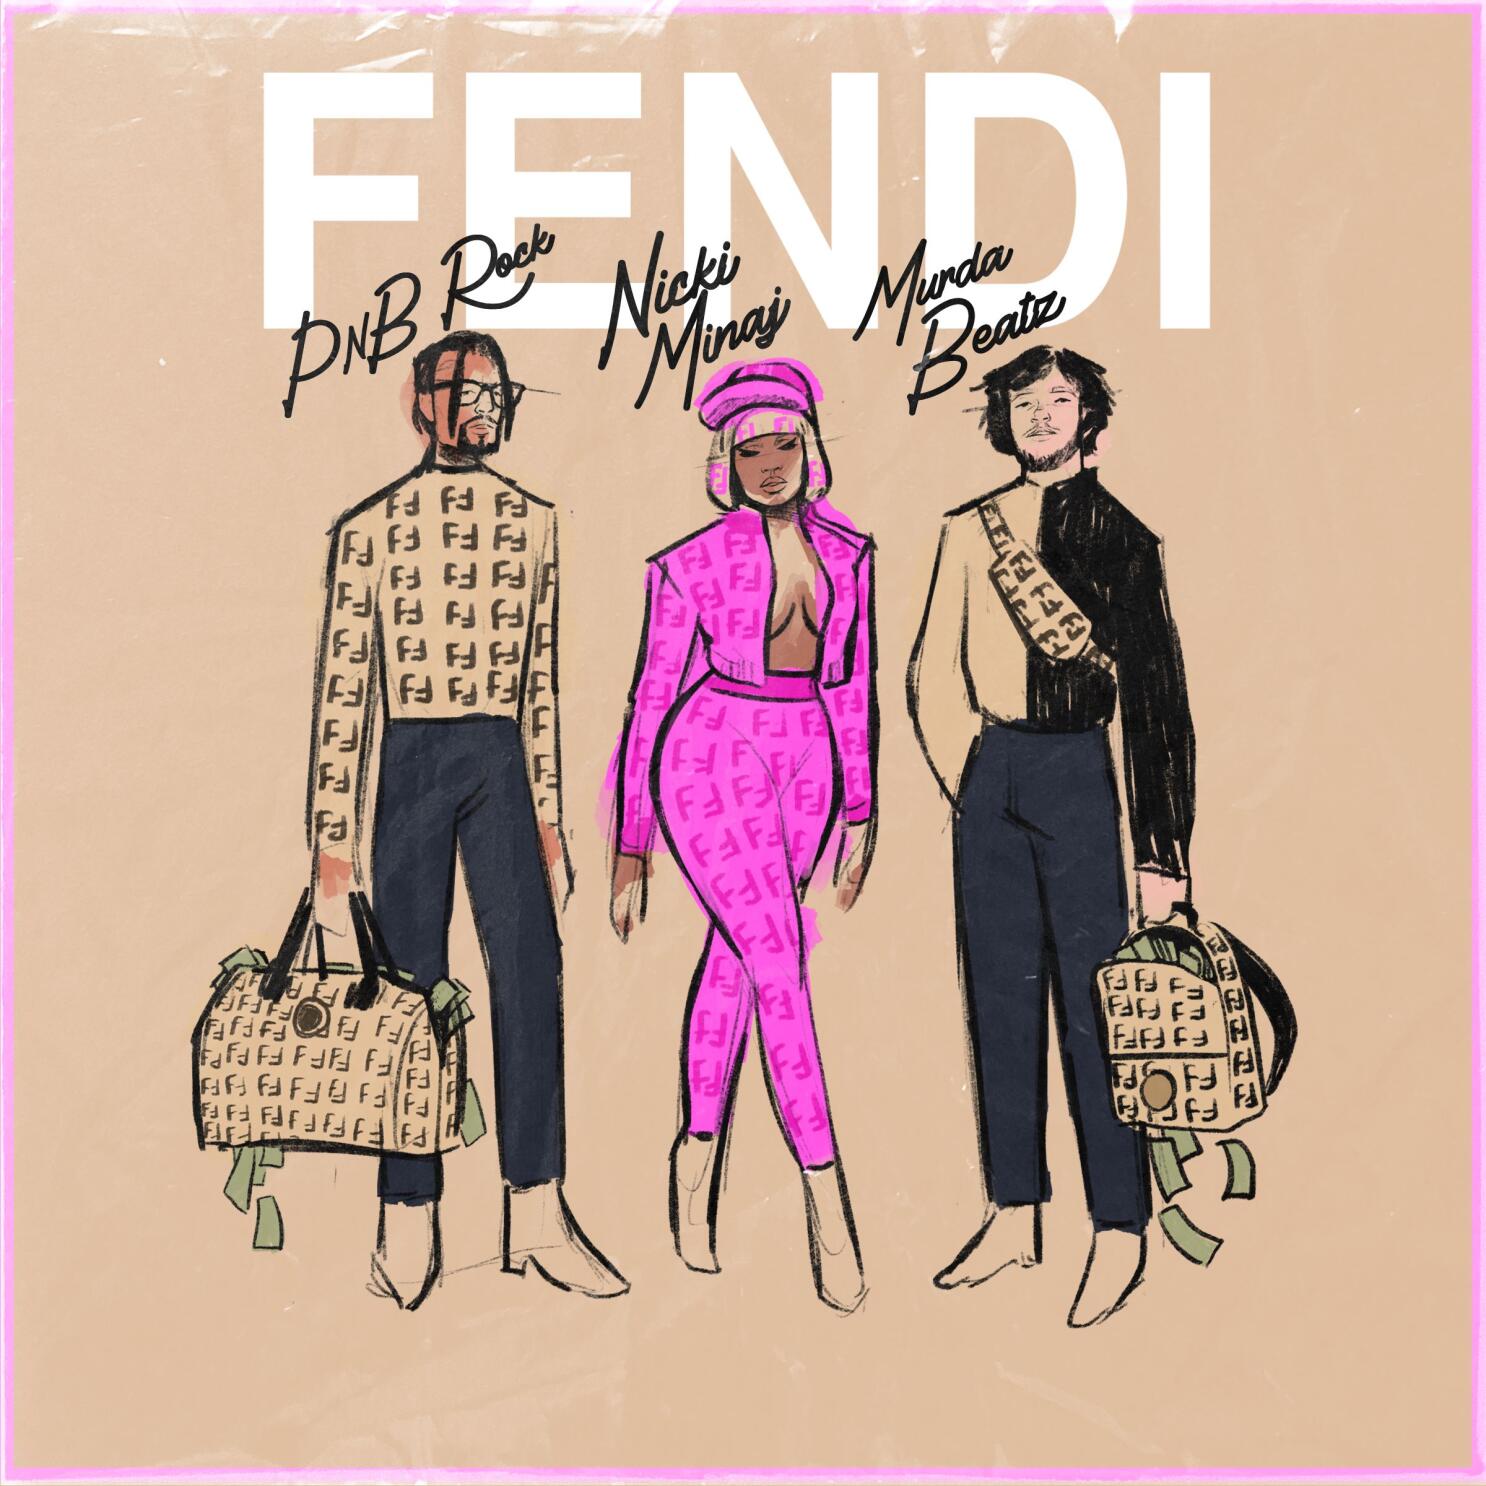 FENDI x Nicki Minaj Collection Drops Today